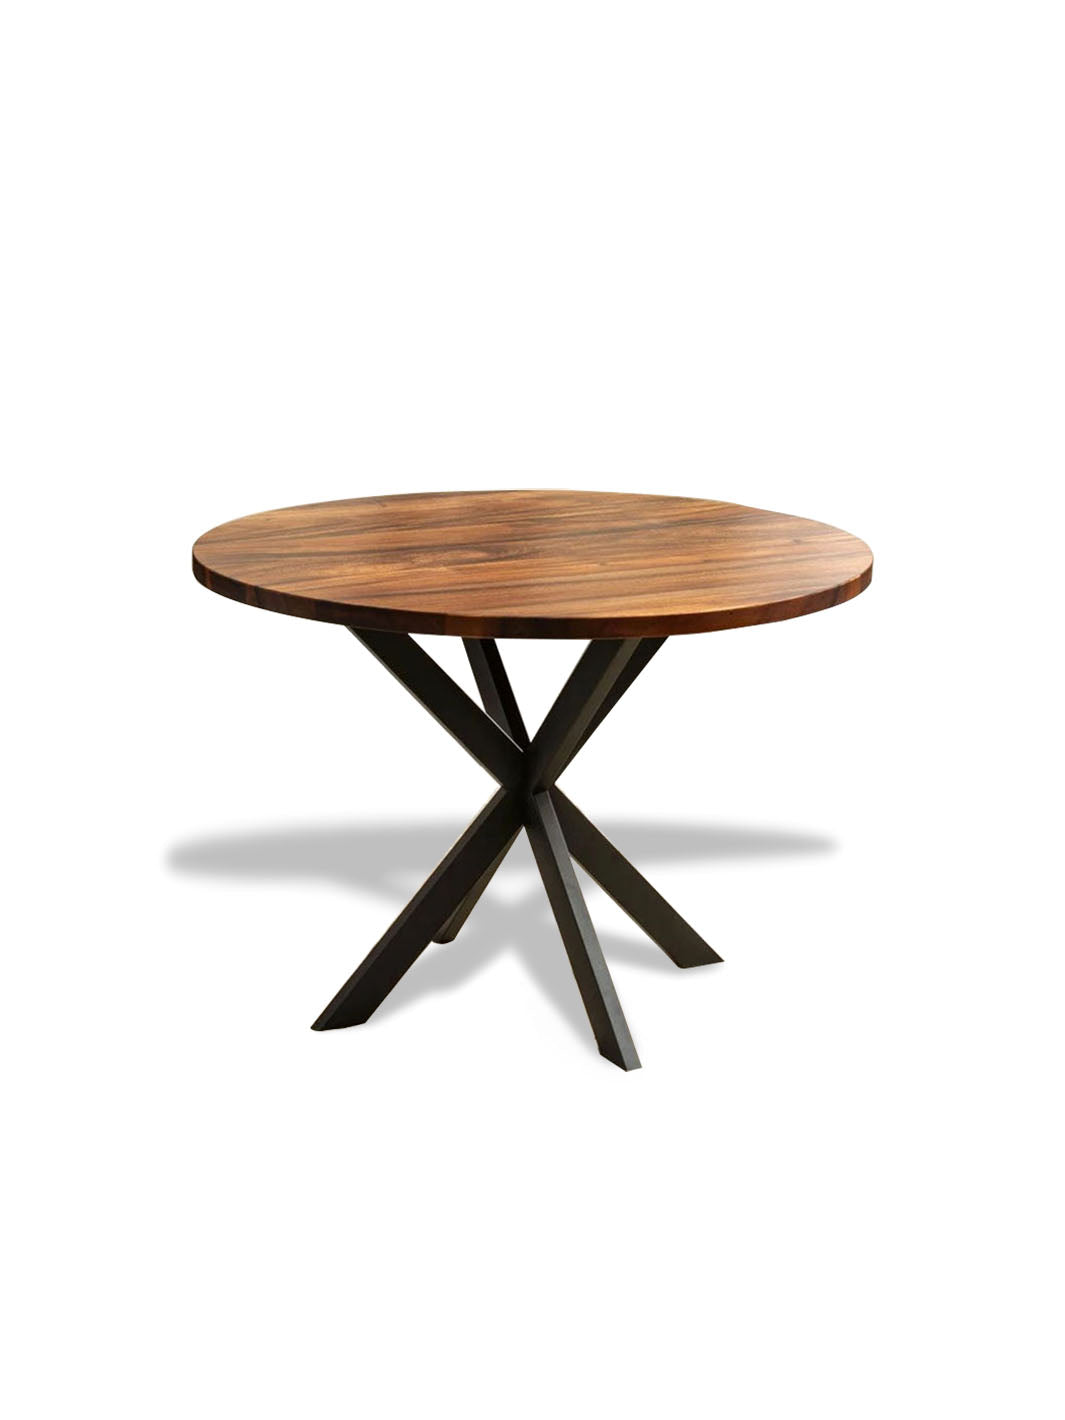 Handcrafted Modern Round Dining Table Dark Brown Walnut Wood Metal Spider Legs 42" D x 30" H